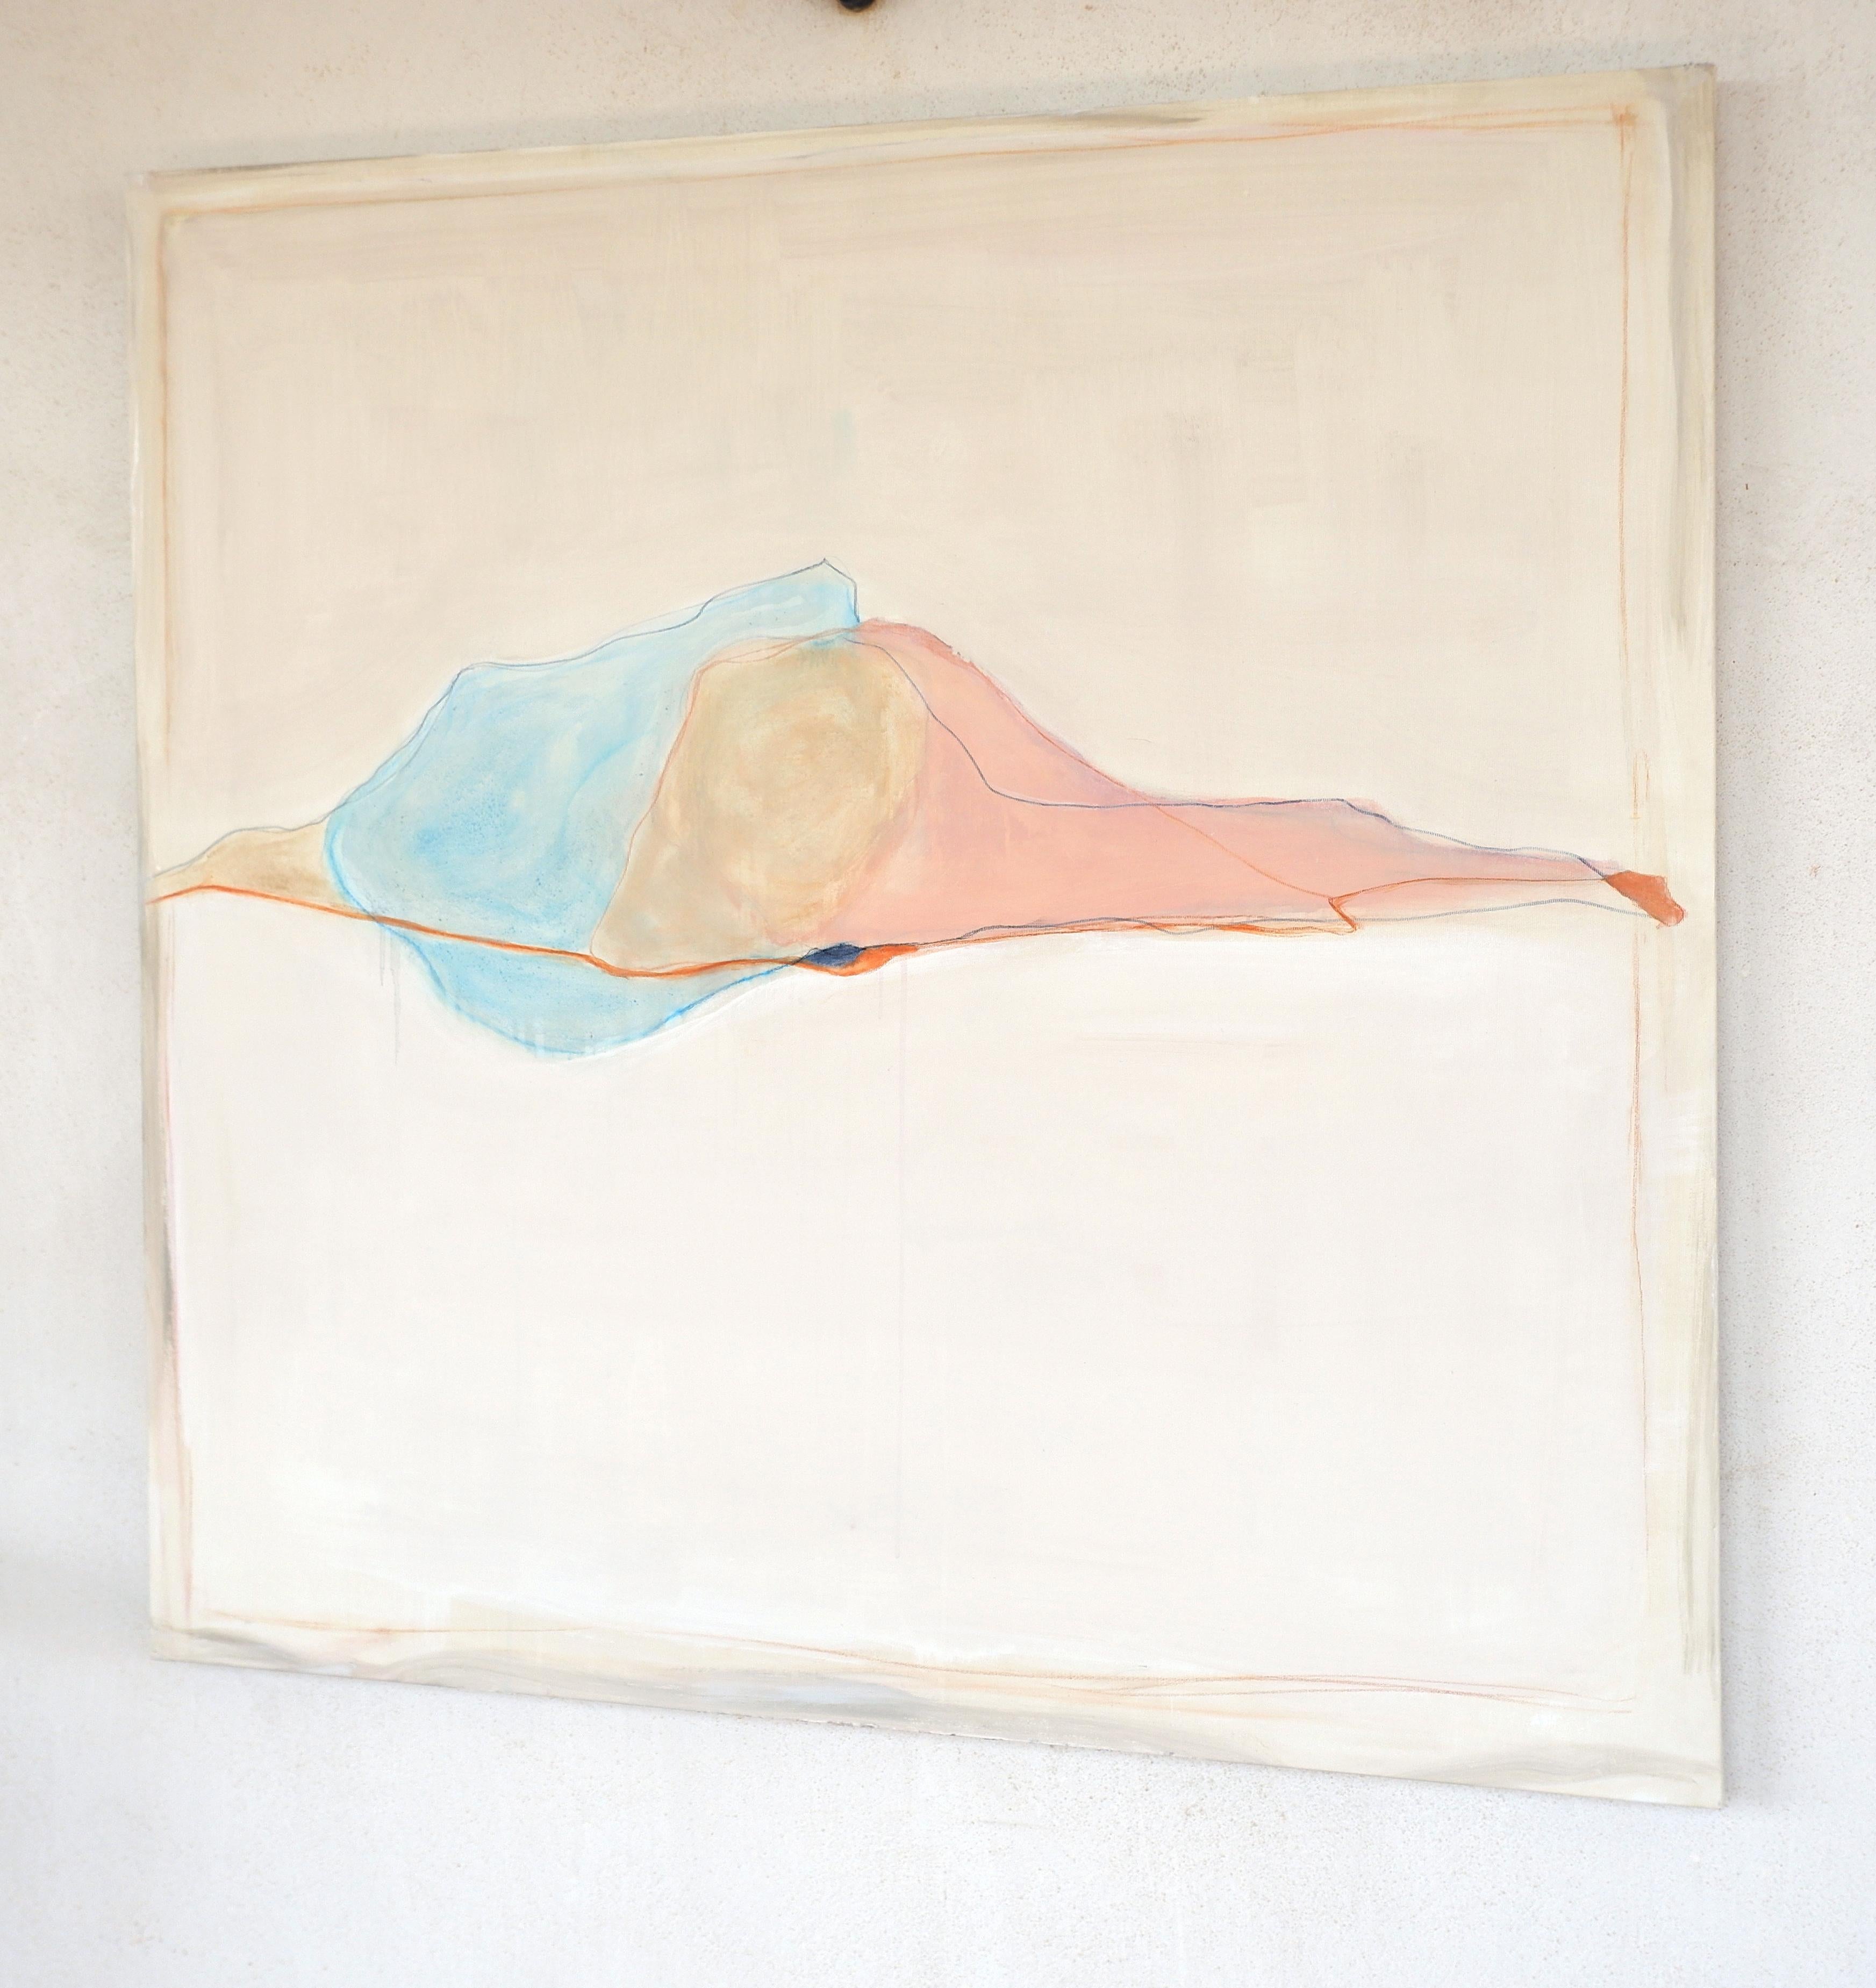  Abstrakte Landschaft , Weißtöne , Minimalistisches Gemälde  in Italien hergestellt – Painting von Marilina Marchica